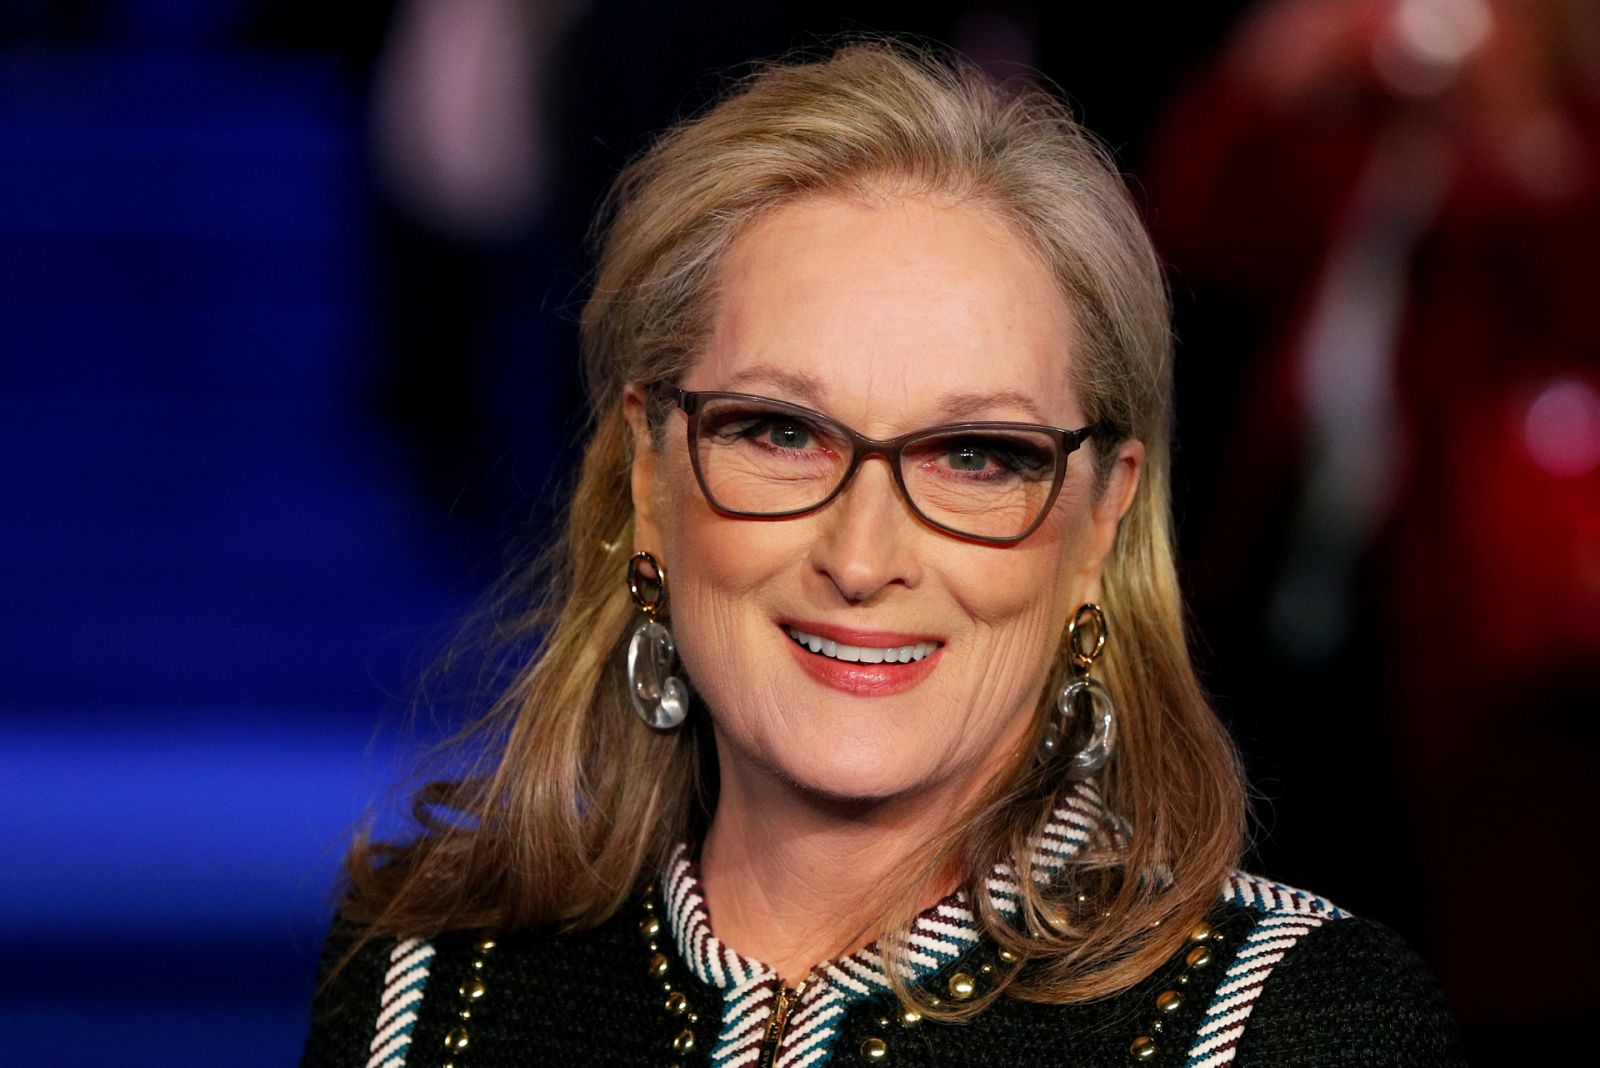 Premios Oscar: Meryl Streep, 21 nominaciones y 3 premios